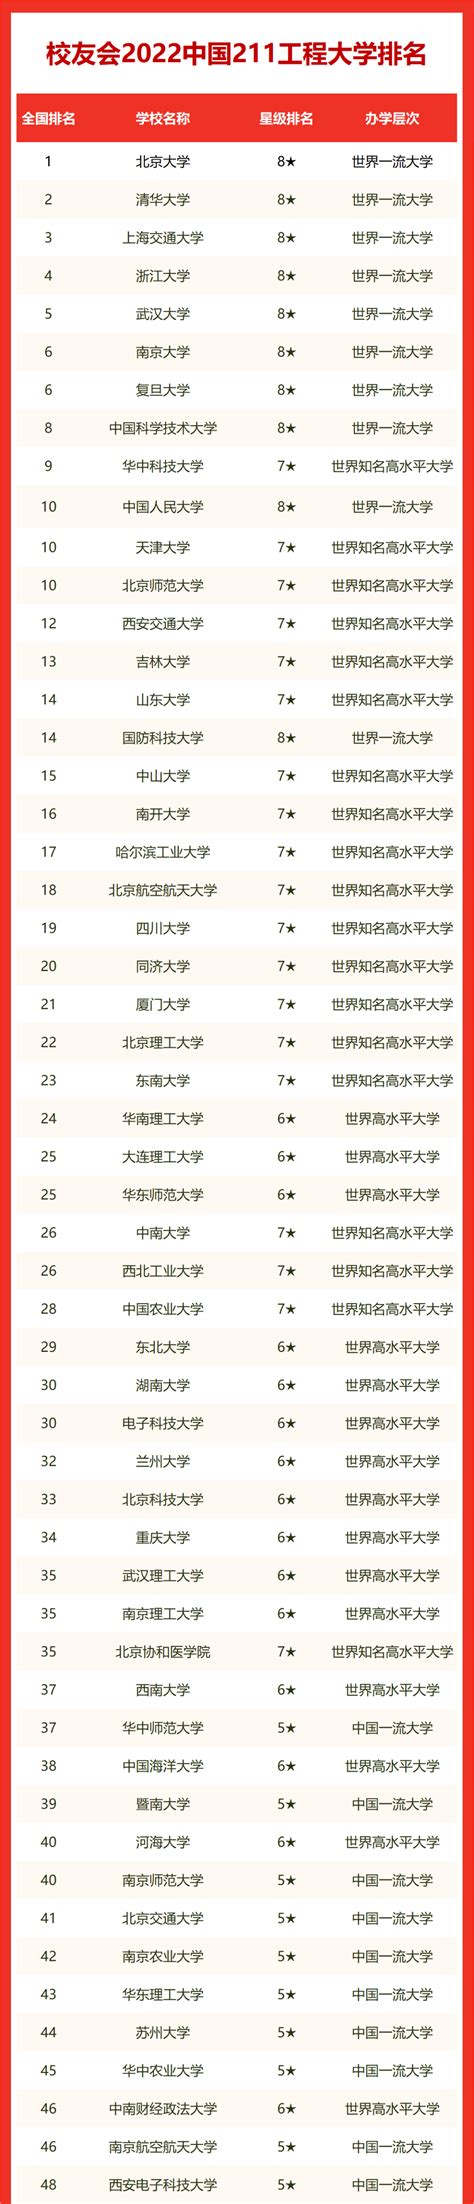 中国百名大学排行榜_2014中国大学排行榜,前一百名名单_中国排行网